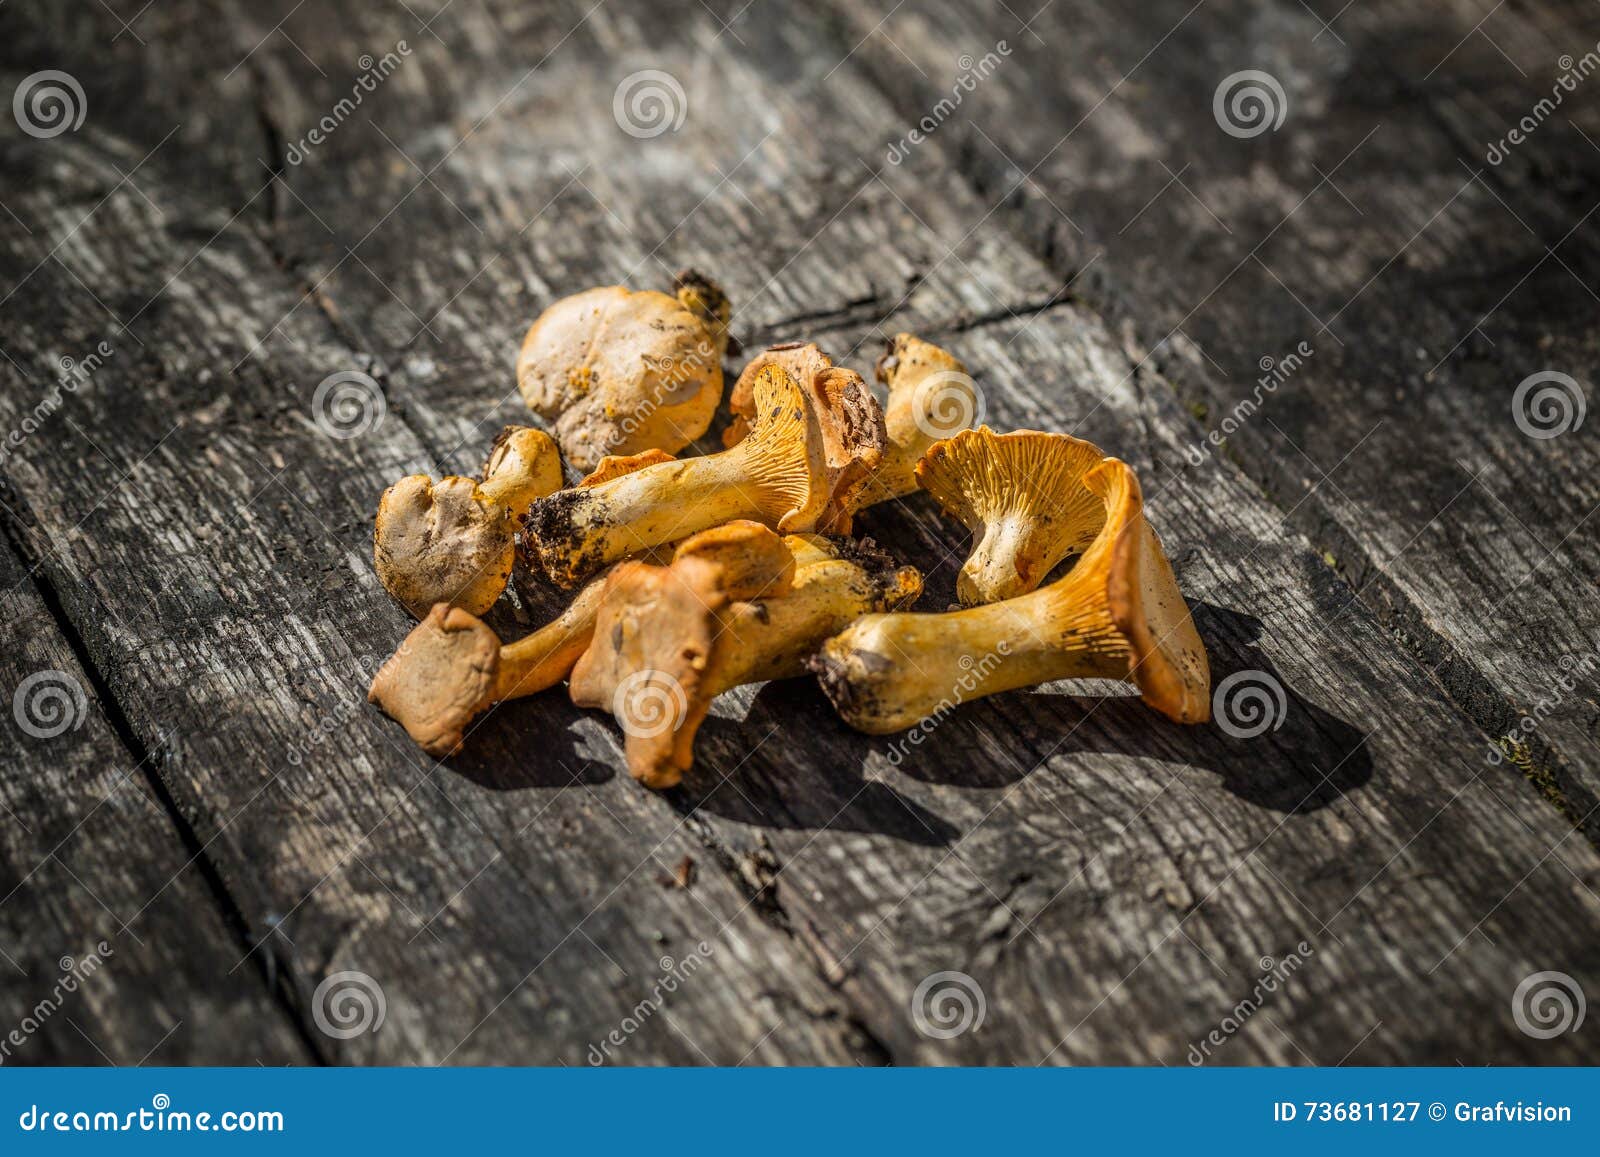 10,000+张最精彩的“黄蘑菇”图片 · 100%免费下载 · Pexels素材图片